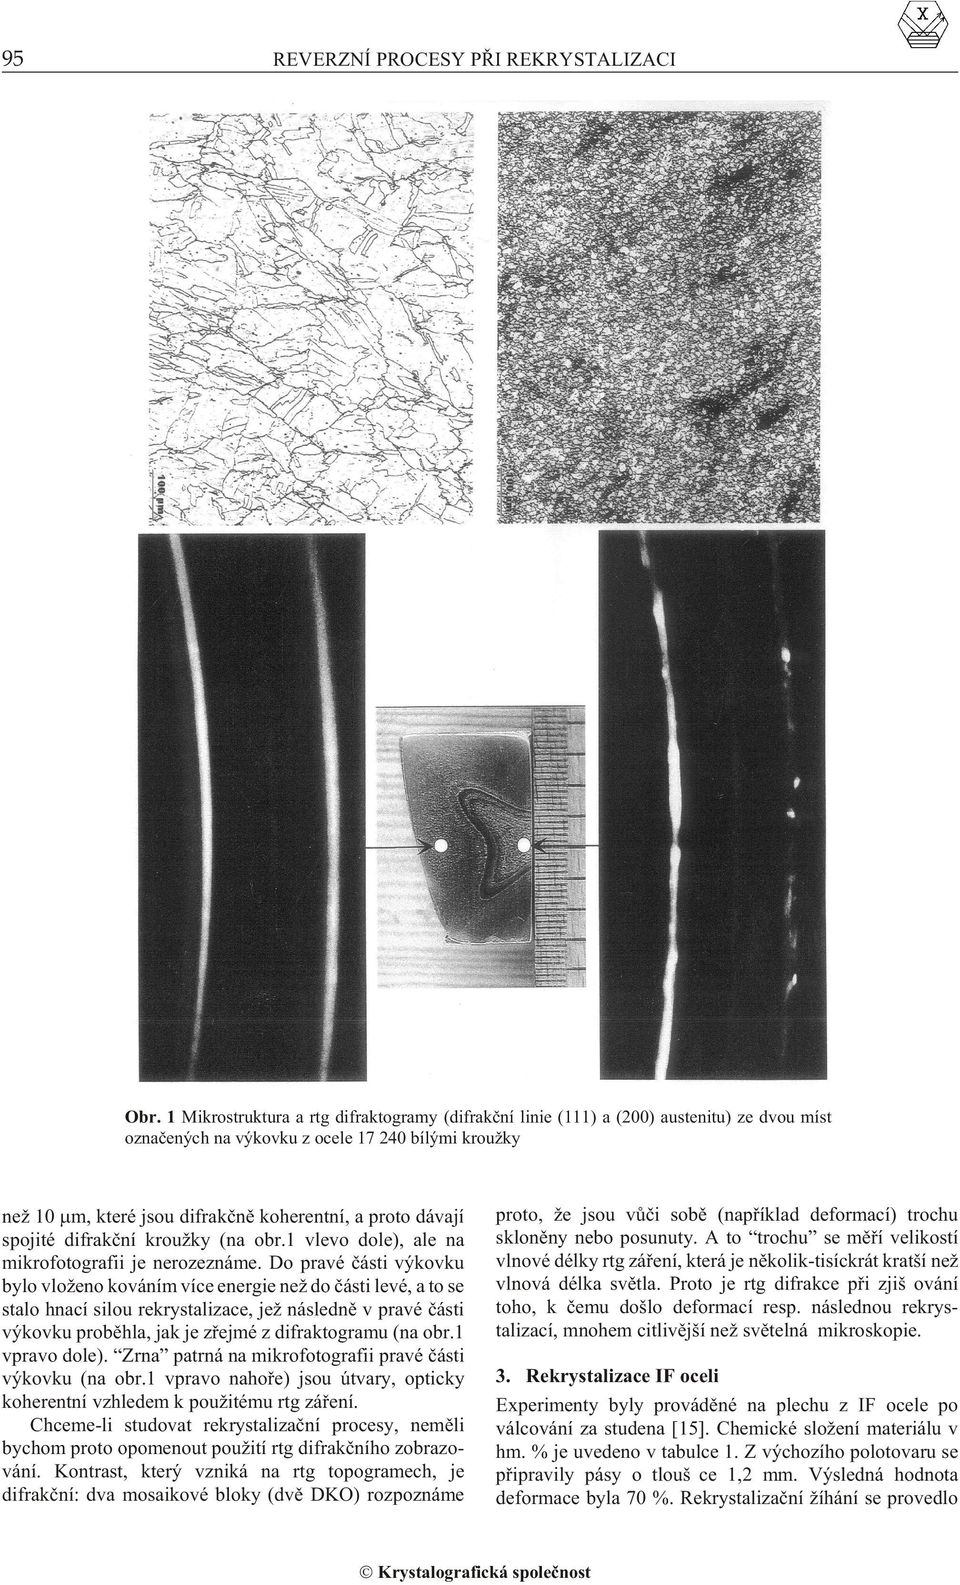 pojité difrakèní kroužky (na obr.1 vlevo dole), ale na mikrofotografii je nerozeznáme.